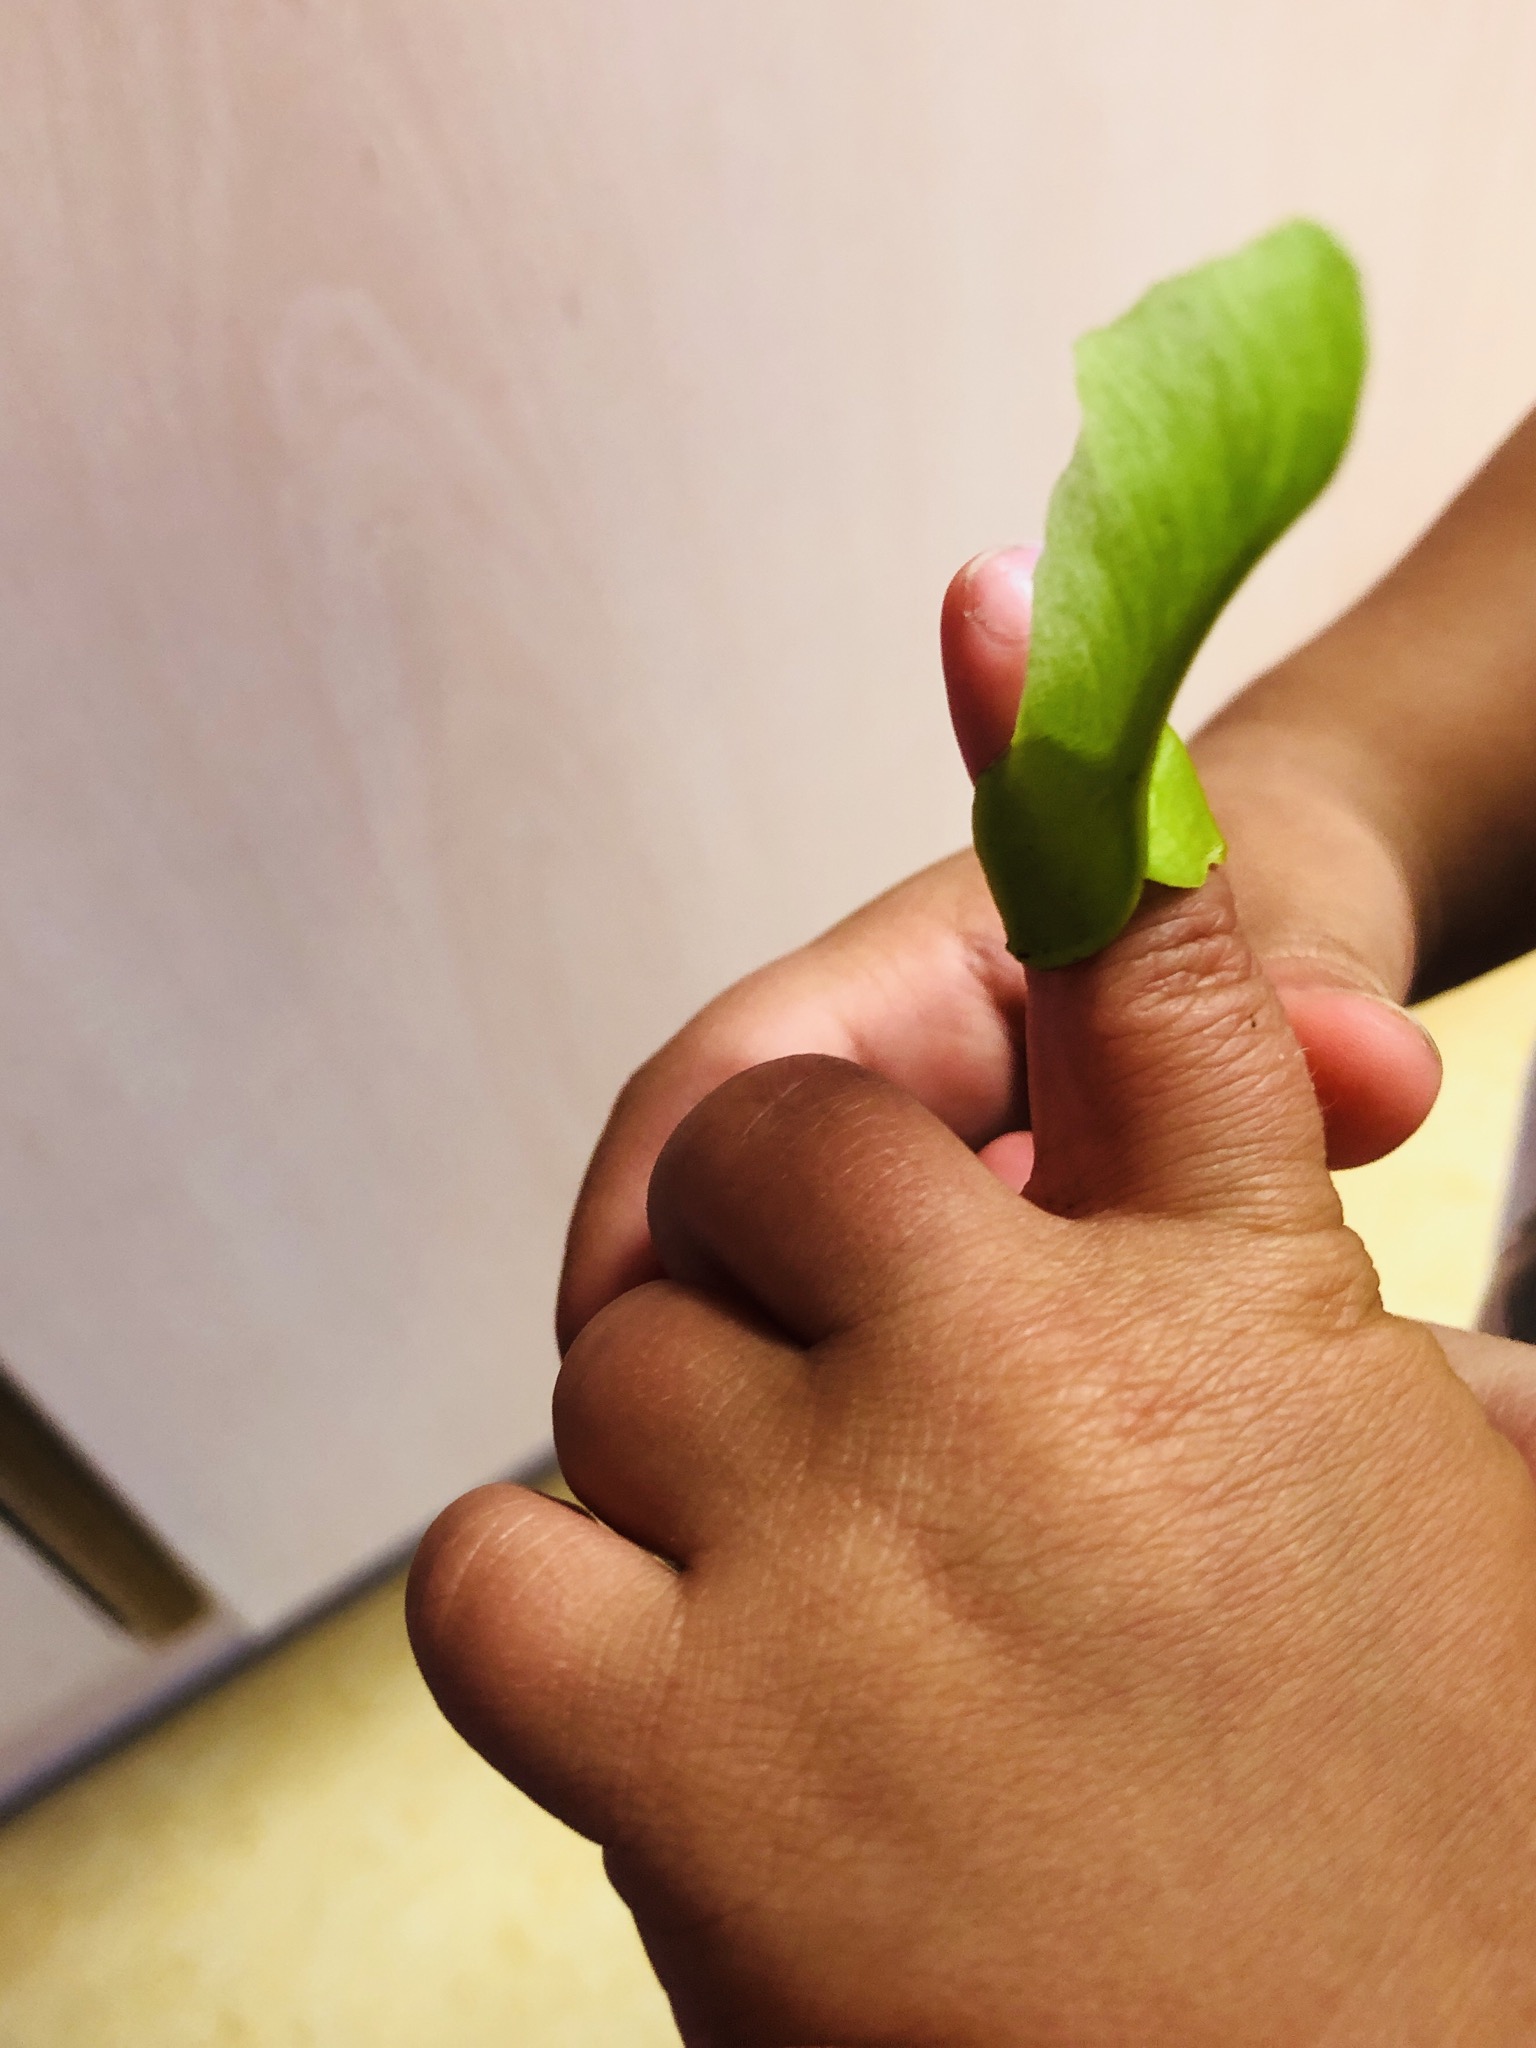 Bild zum Schritt 5 für die Kinder-Beschäftigung: 'Als Erstkontakt mit den Samen empfiehlt es sich tatsächlich, den...'